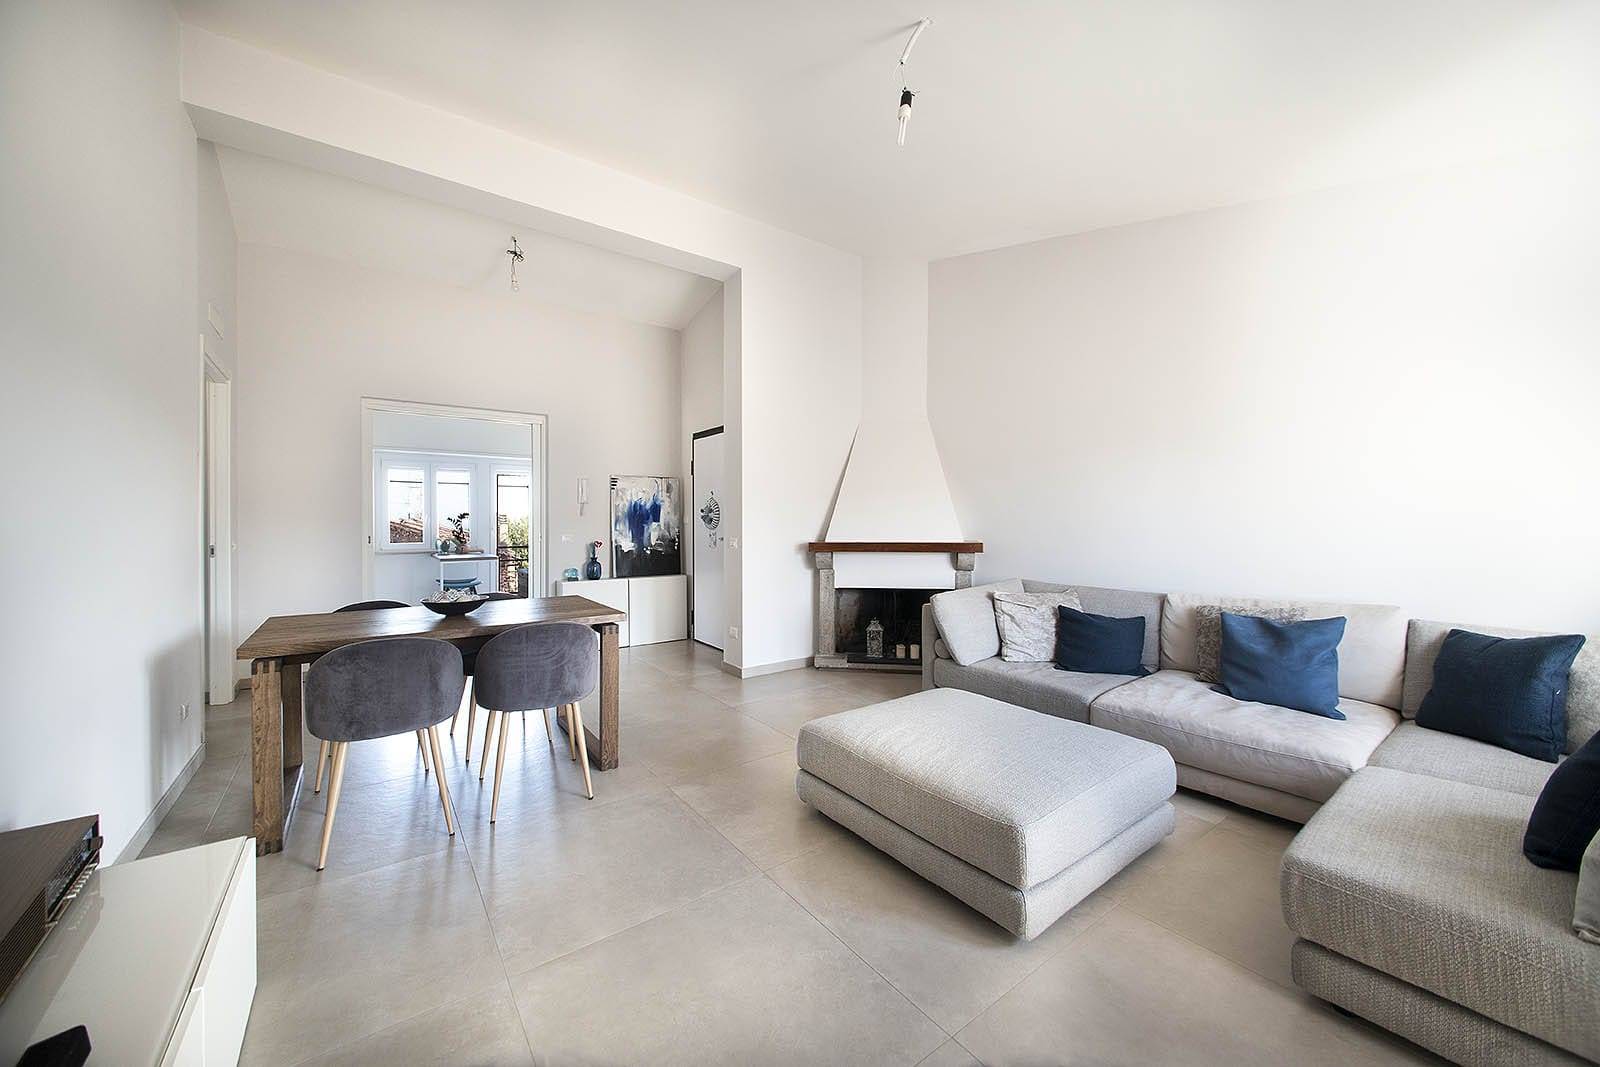 Appartamento in vendita a Capranica, 4 locali, prezzo € 129.000 | PortaleAgenzieImmobiliari.it